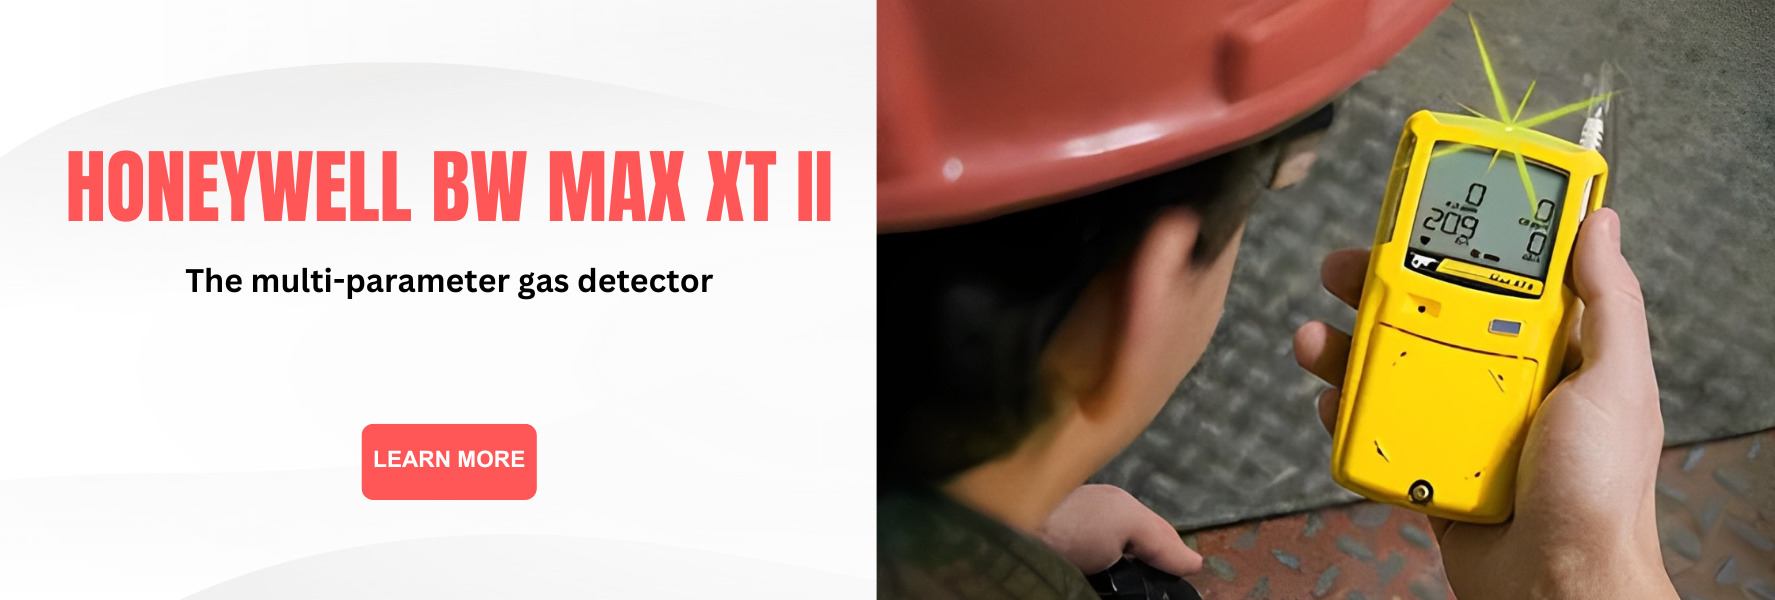 Max XT II